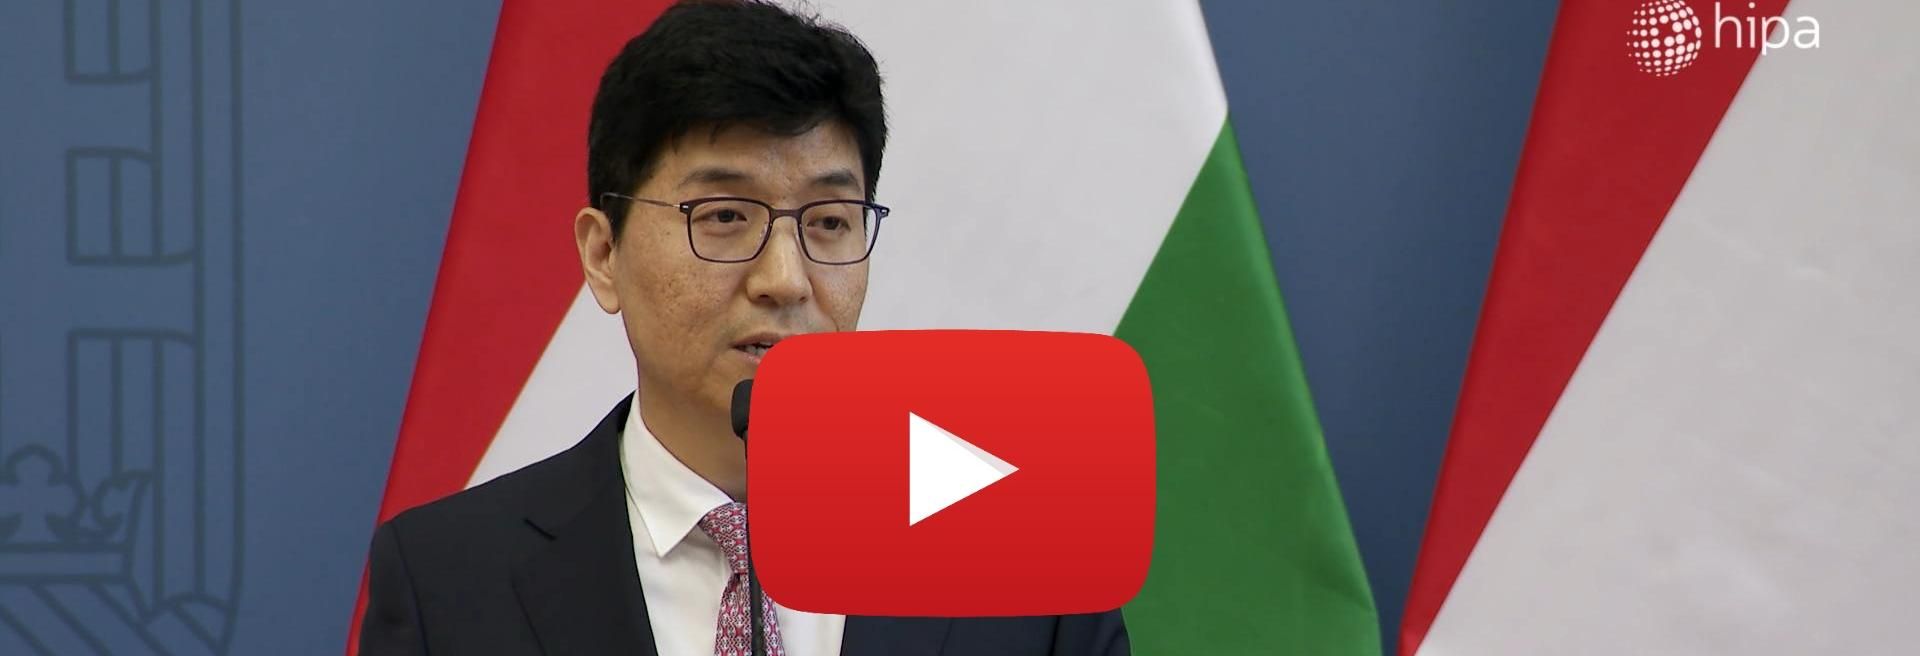 Salgótarjában építi első külföldi üzemét a Bumchun - VIDEÓRIPORT